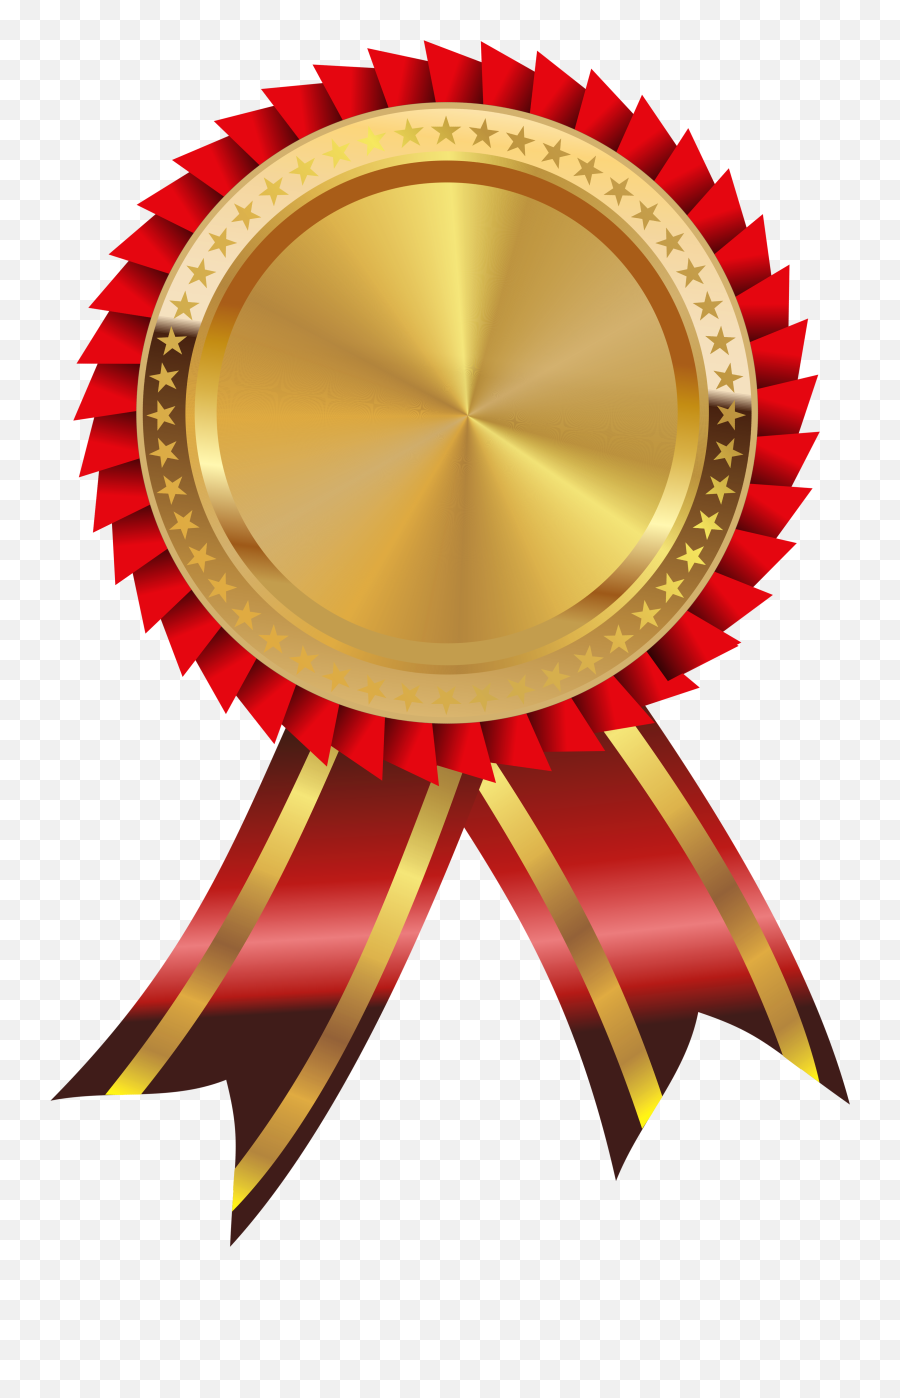 Gold Medal Award - Certificate Logo Design Png Emoji,Gold Medal Emoji